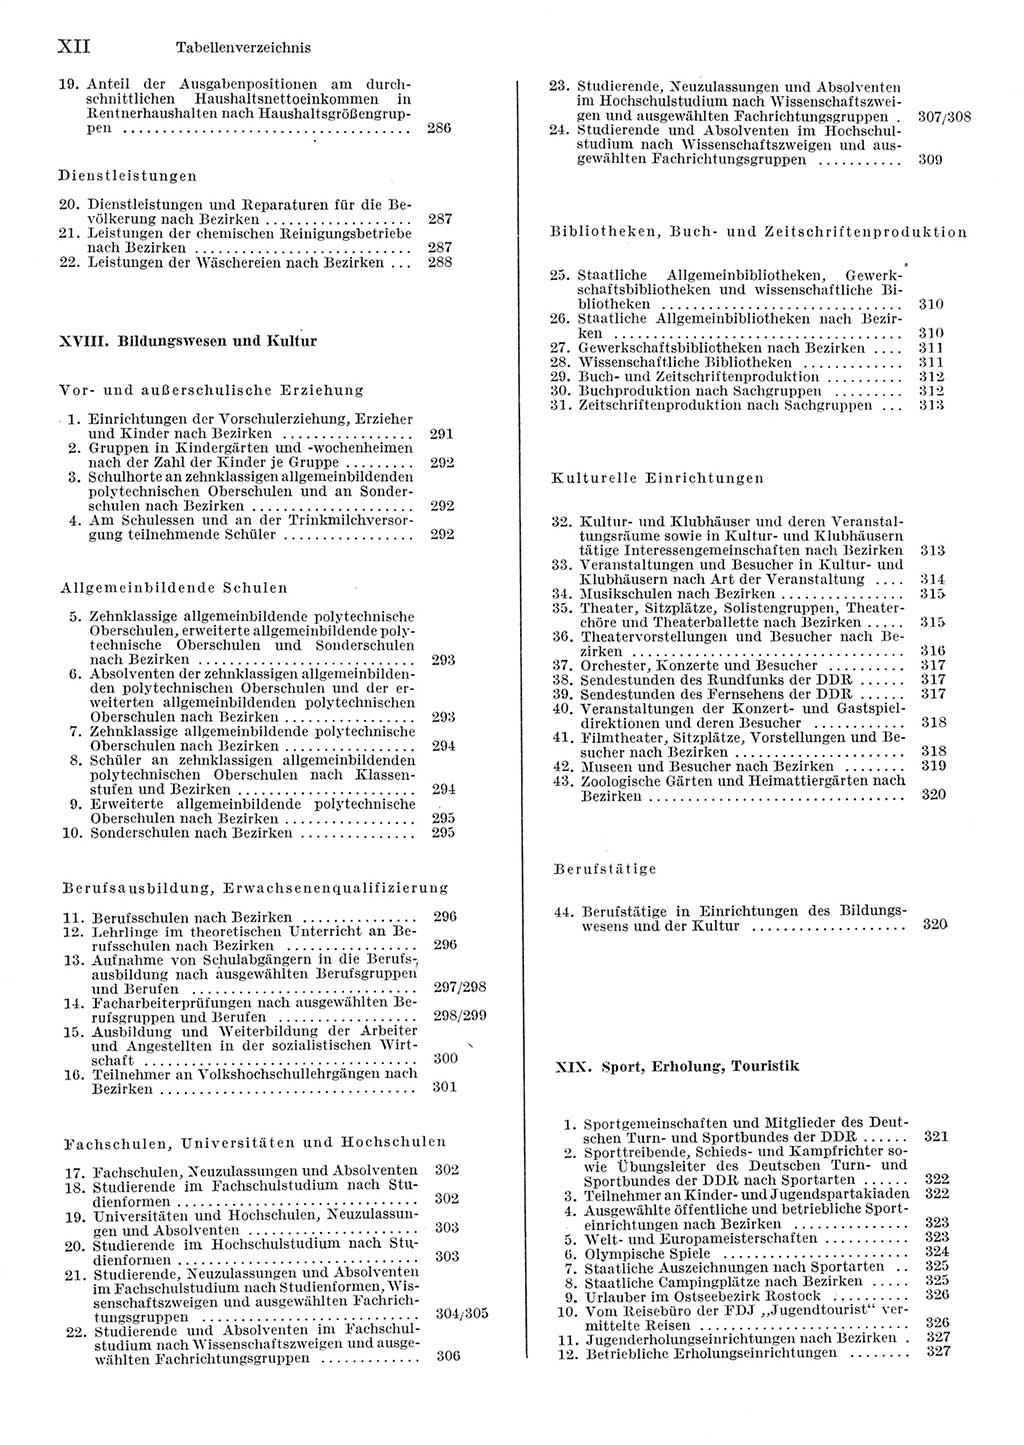 Statistisches Jahrbuch der Deutschen Demokratischen Republik (DDR) 1984, Seite 12 (Stat. Jb. DDR 1984, S. 12)